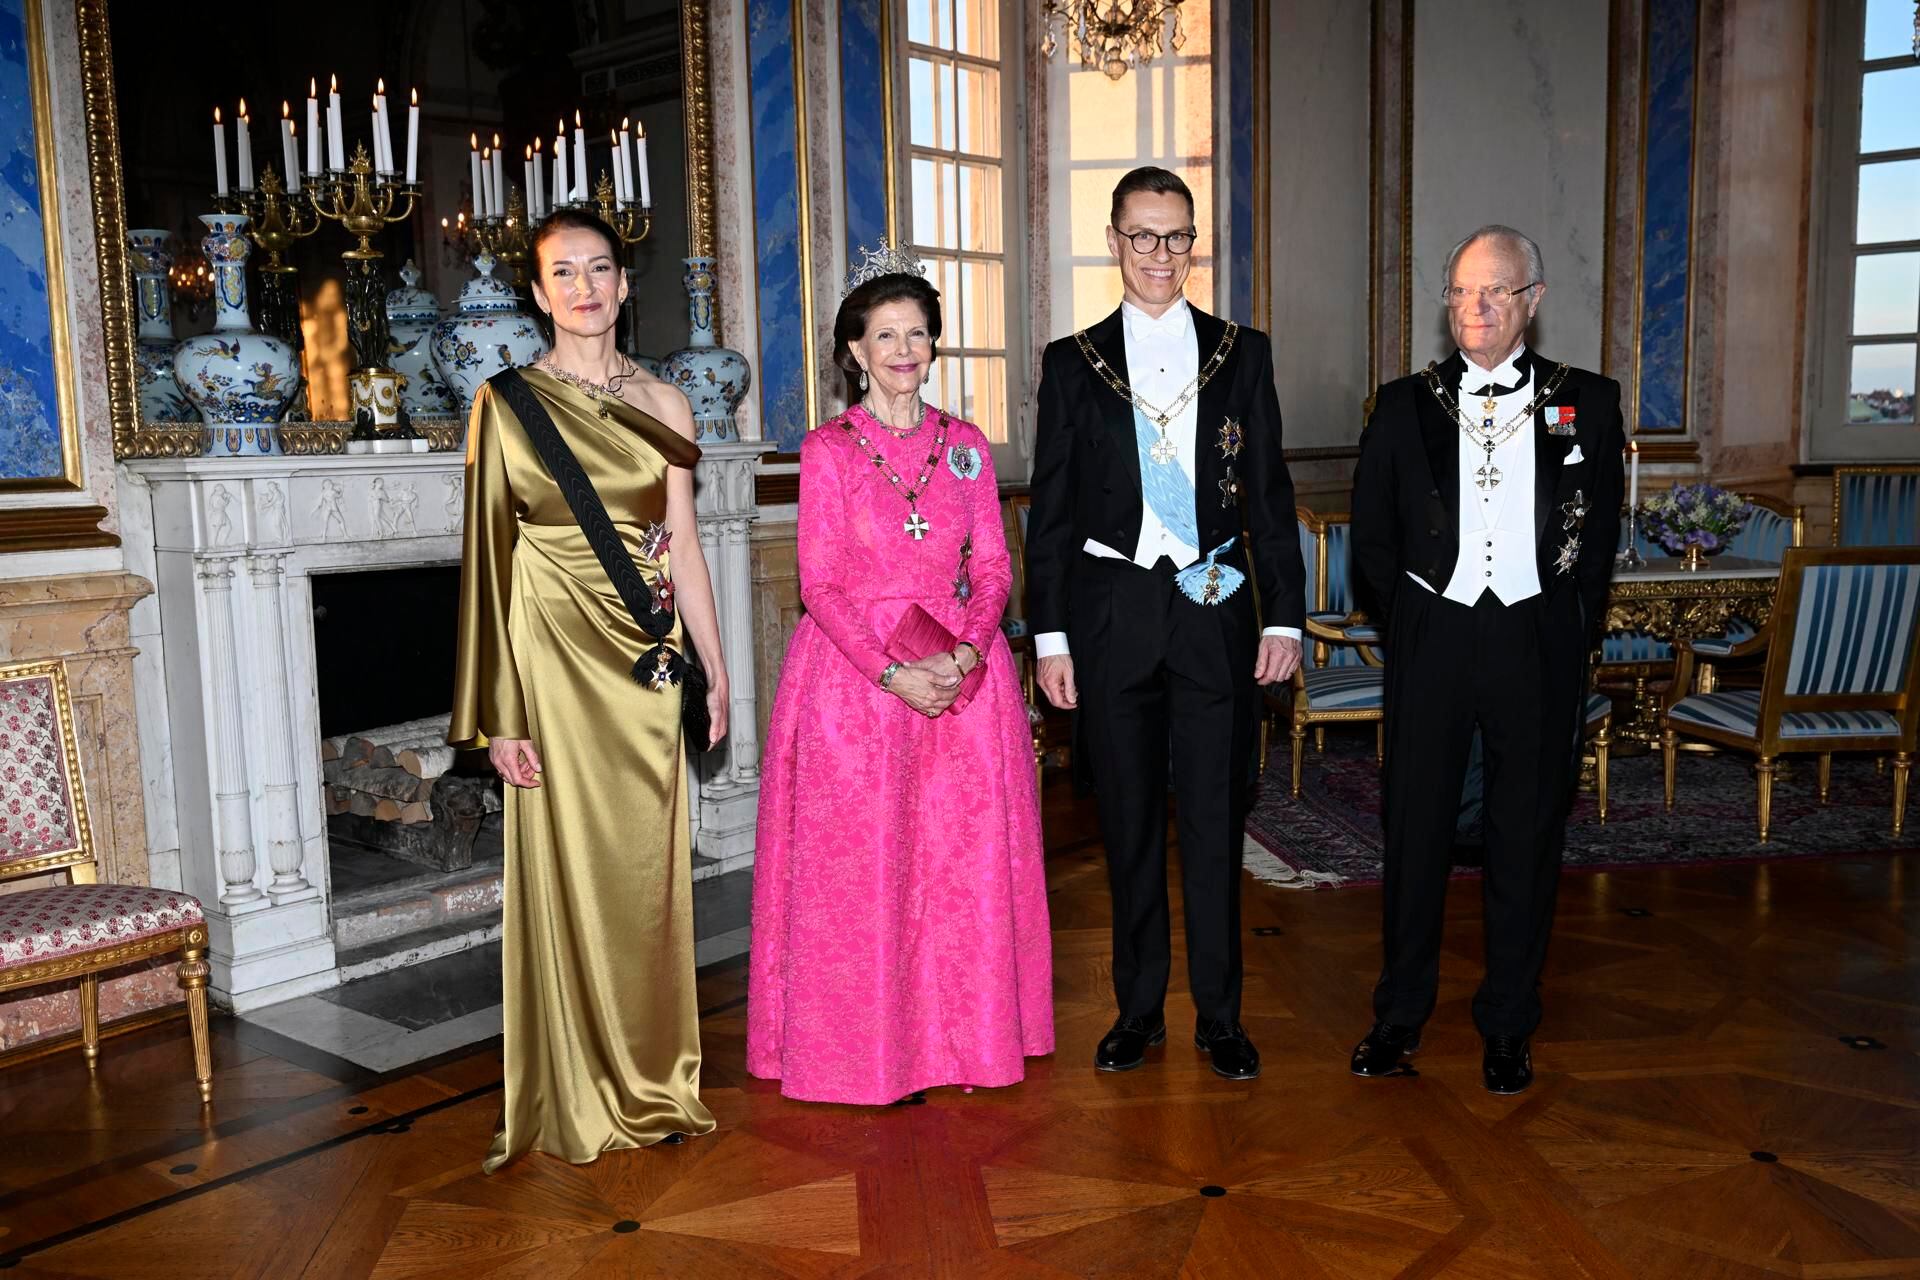 (I-D) La primera dama de Finlandia Suzanne Innes-Stubb, la reina Silvia de Suecia, el presidente de Finlandia Alexander Stubb y el rey de Suecia Carl Gustaf posan para una foto de grupo antes de la cena de gala en Palacio de Estocolmo